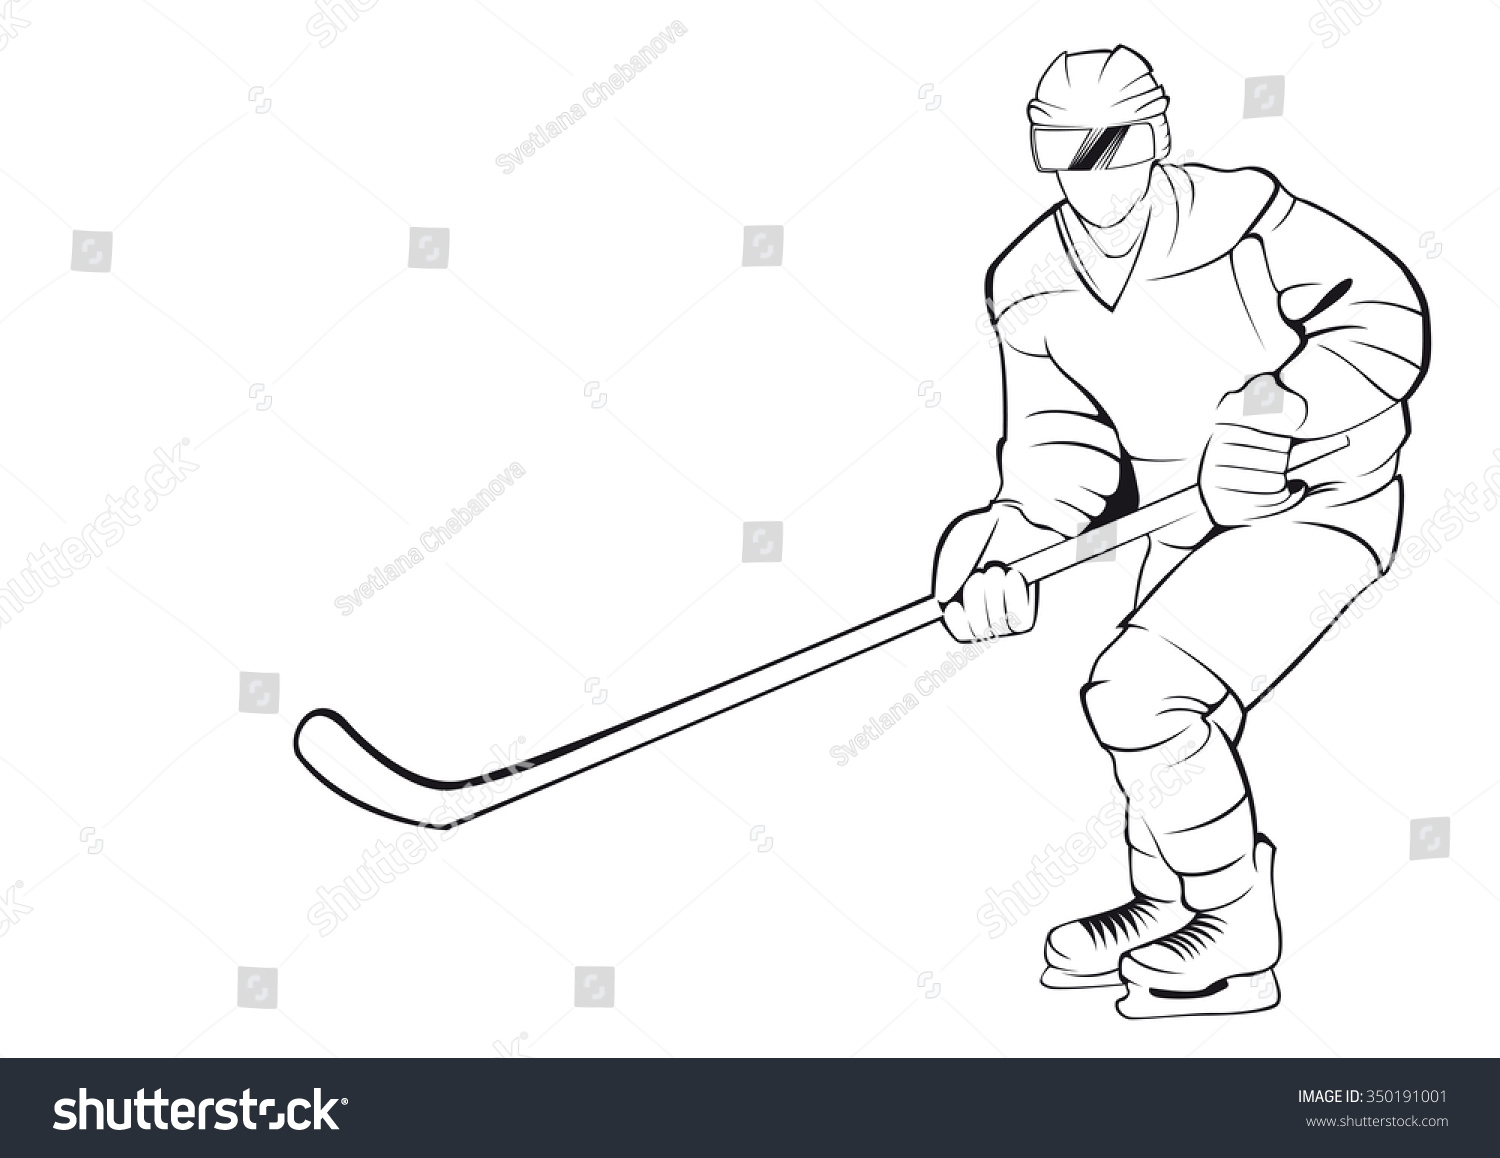 Рисунок хоккеист с клюшкой сзади черно белый